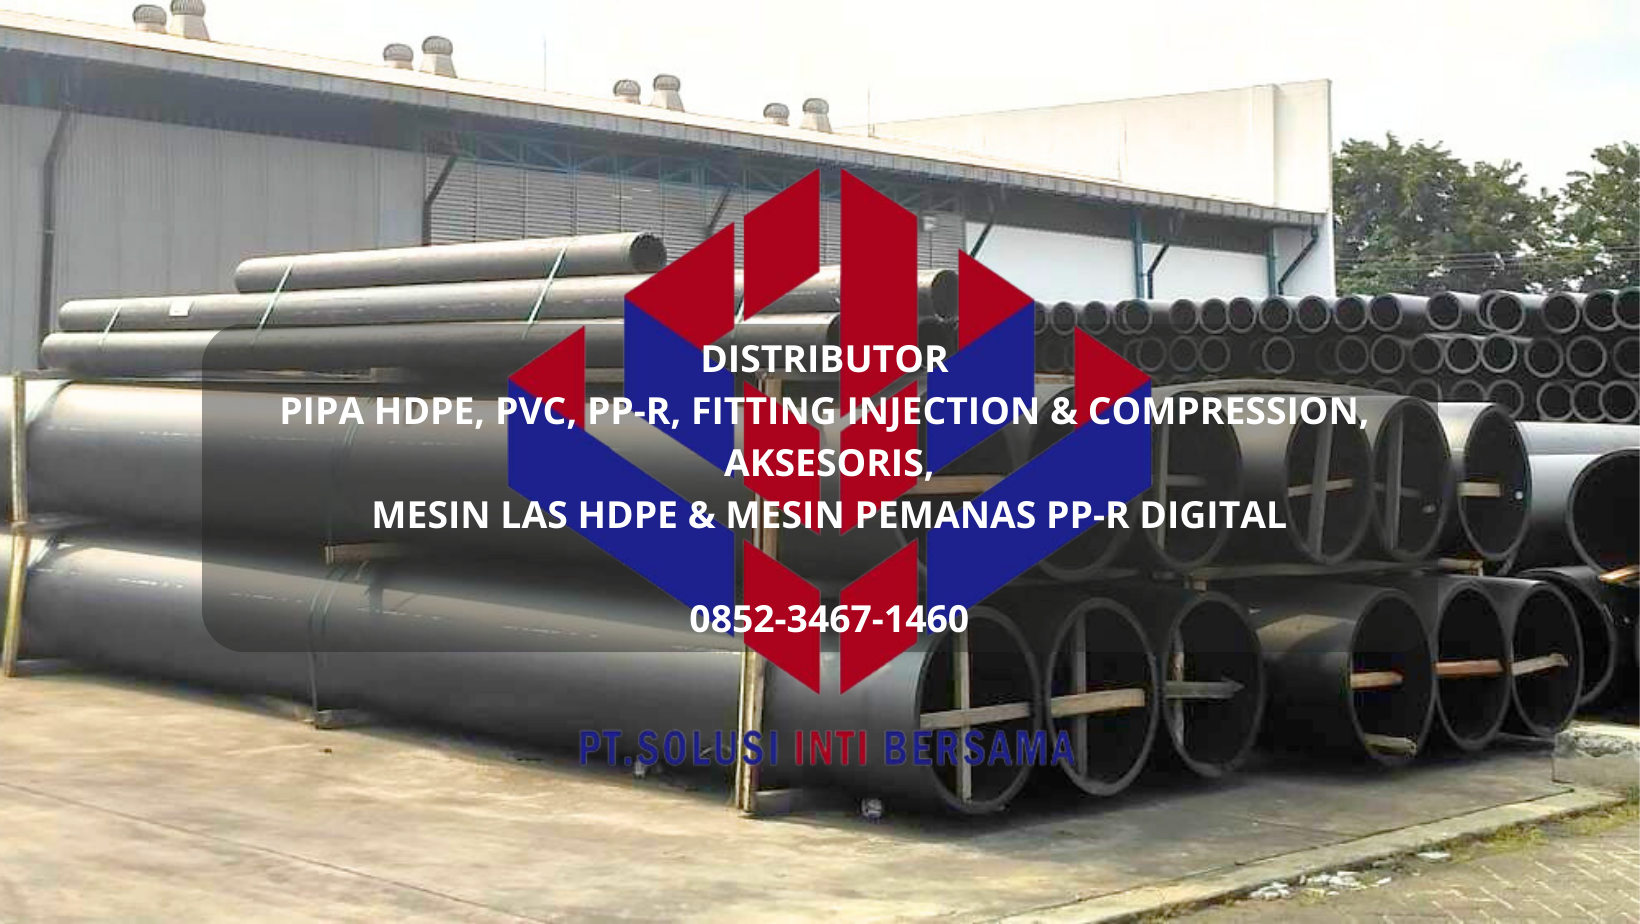 Distributor Jual Pipa HDPE, PVC, PPR, Fitting, Aksesoris, Mesin Las HDPE, Mesin PPR Digital.